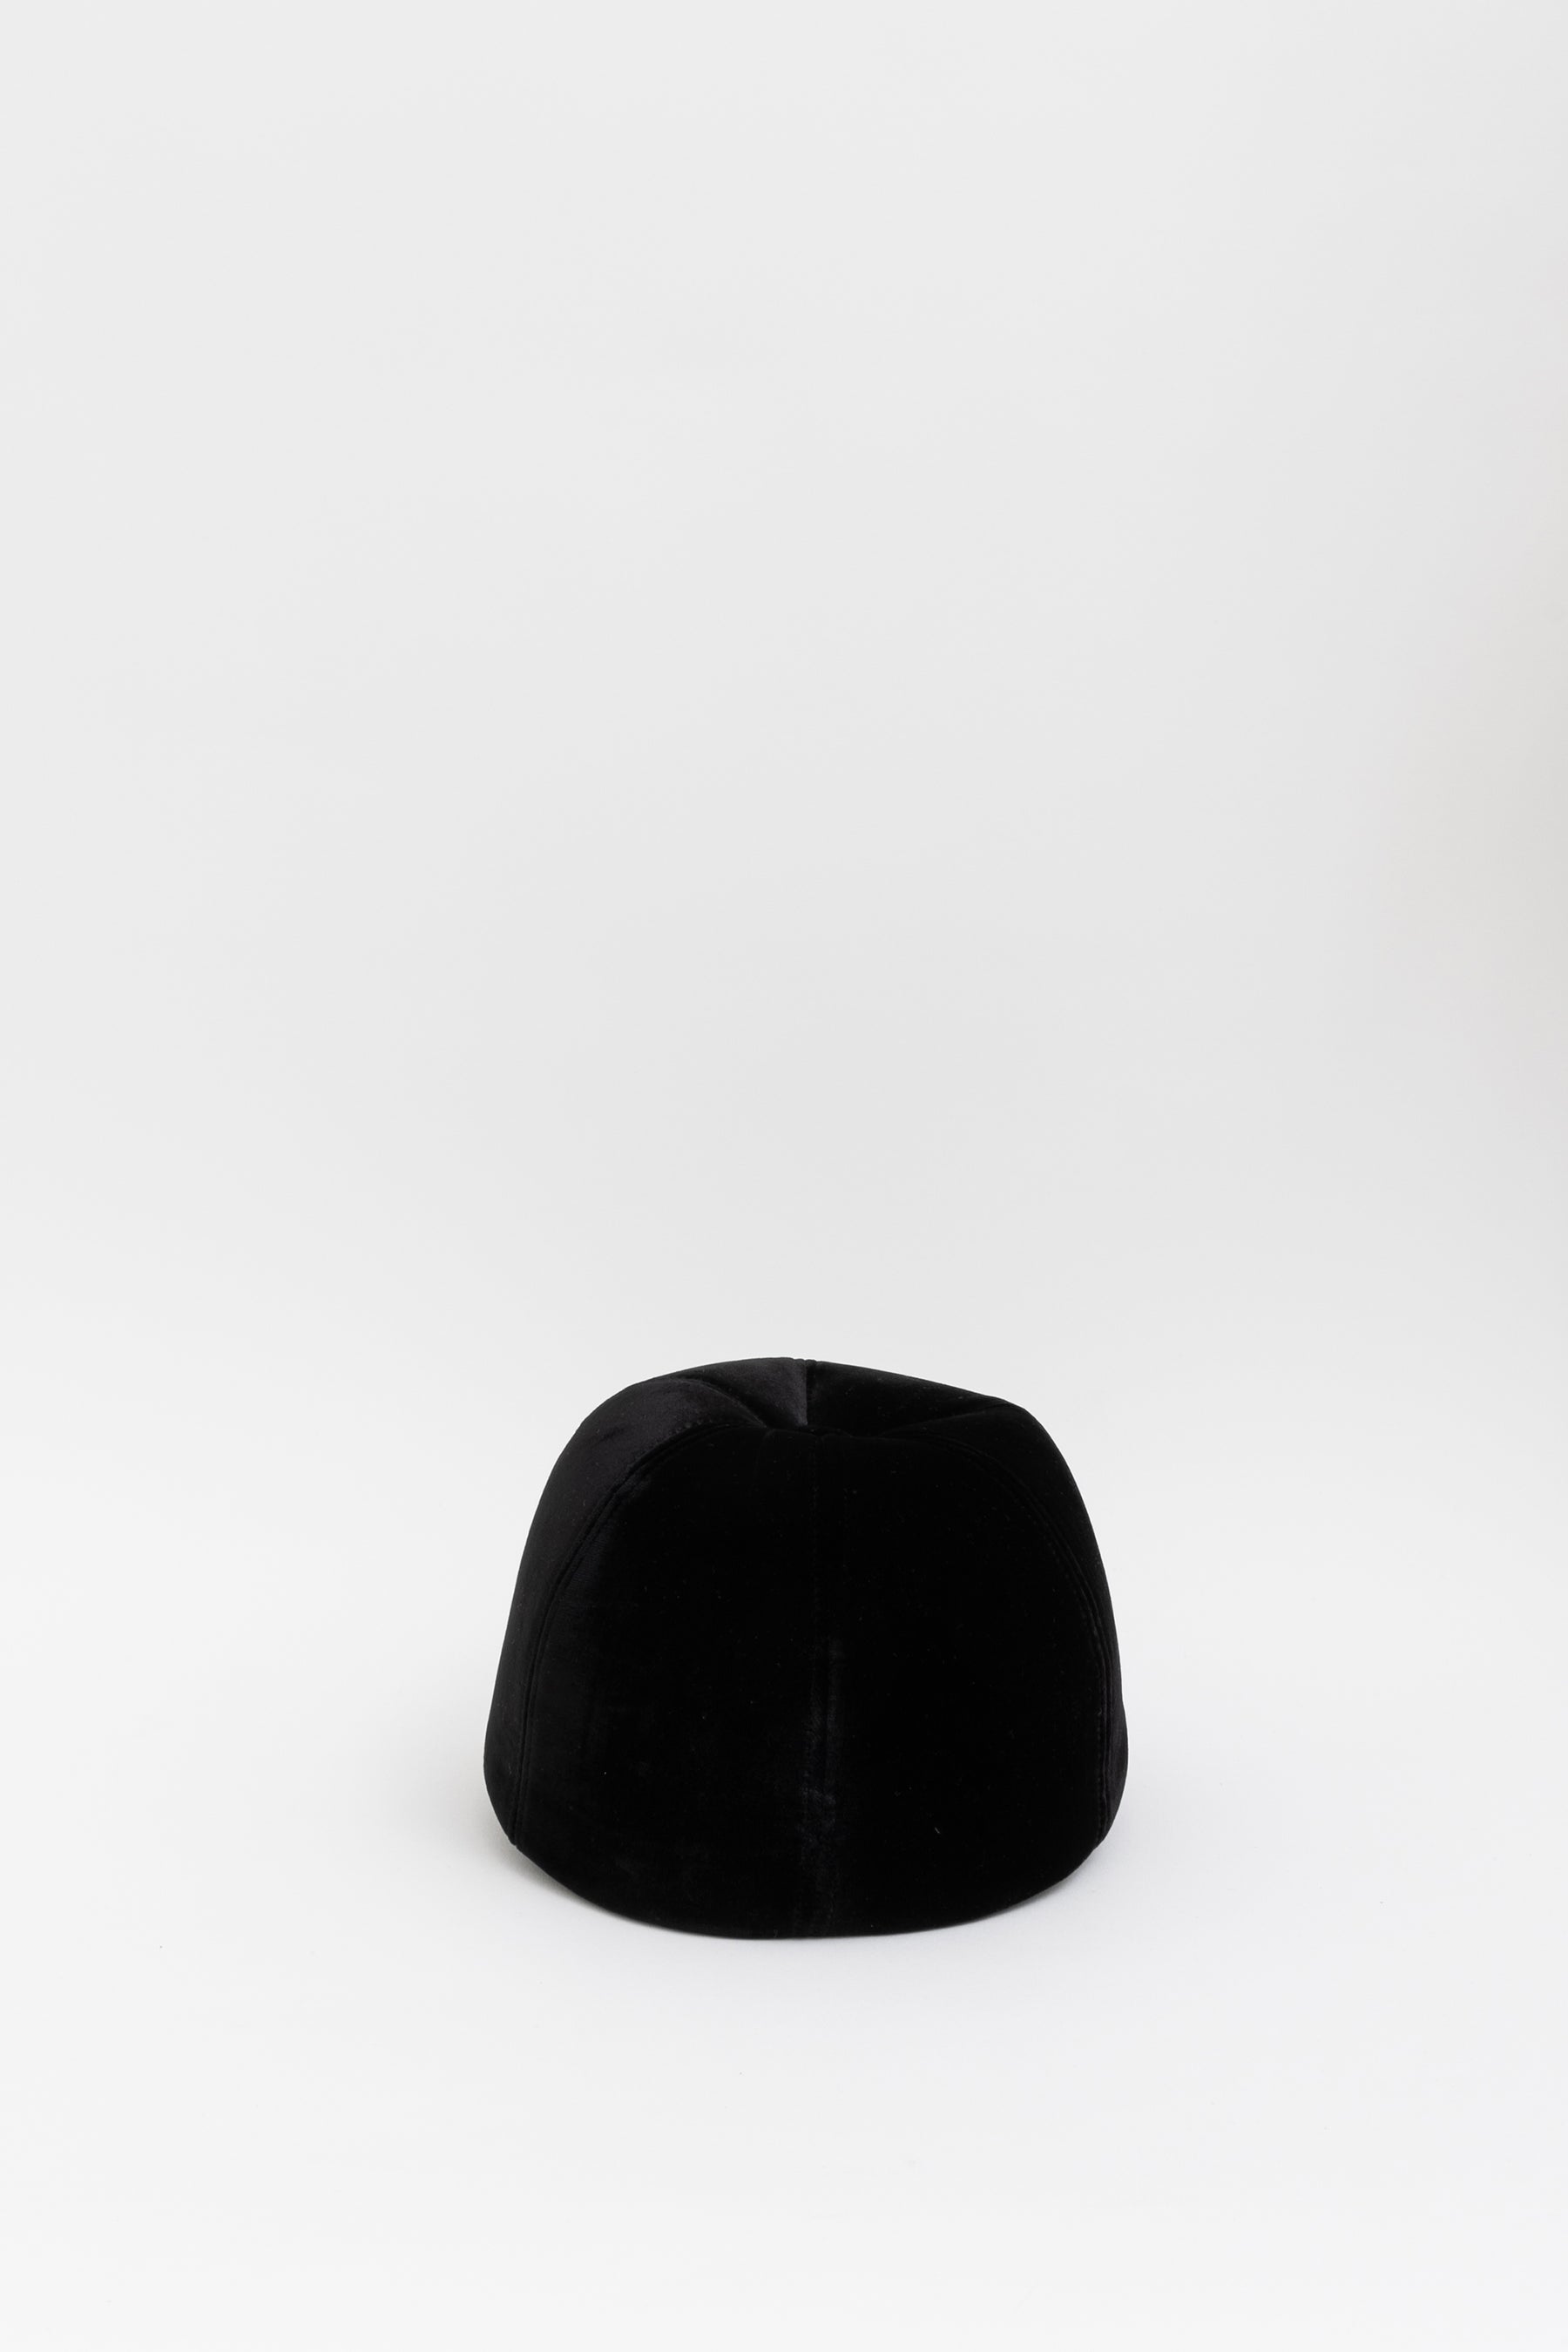 chanel-black-velvet-cc-hat-m-8f25